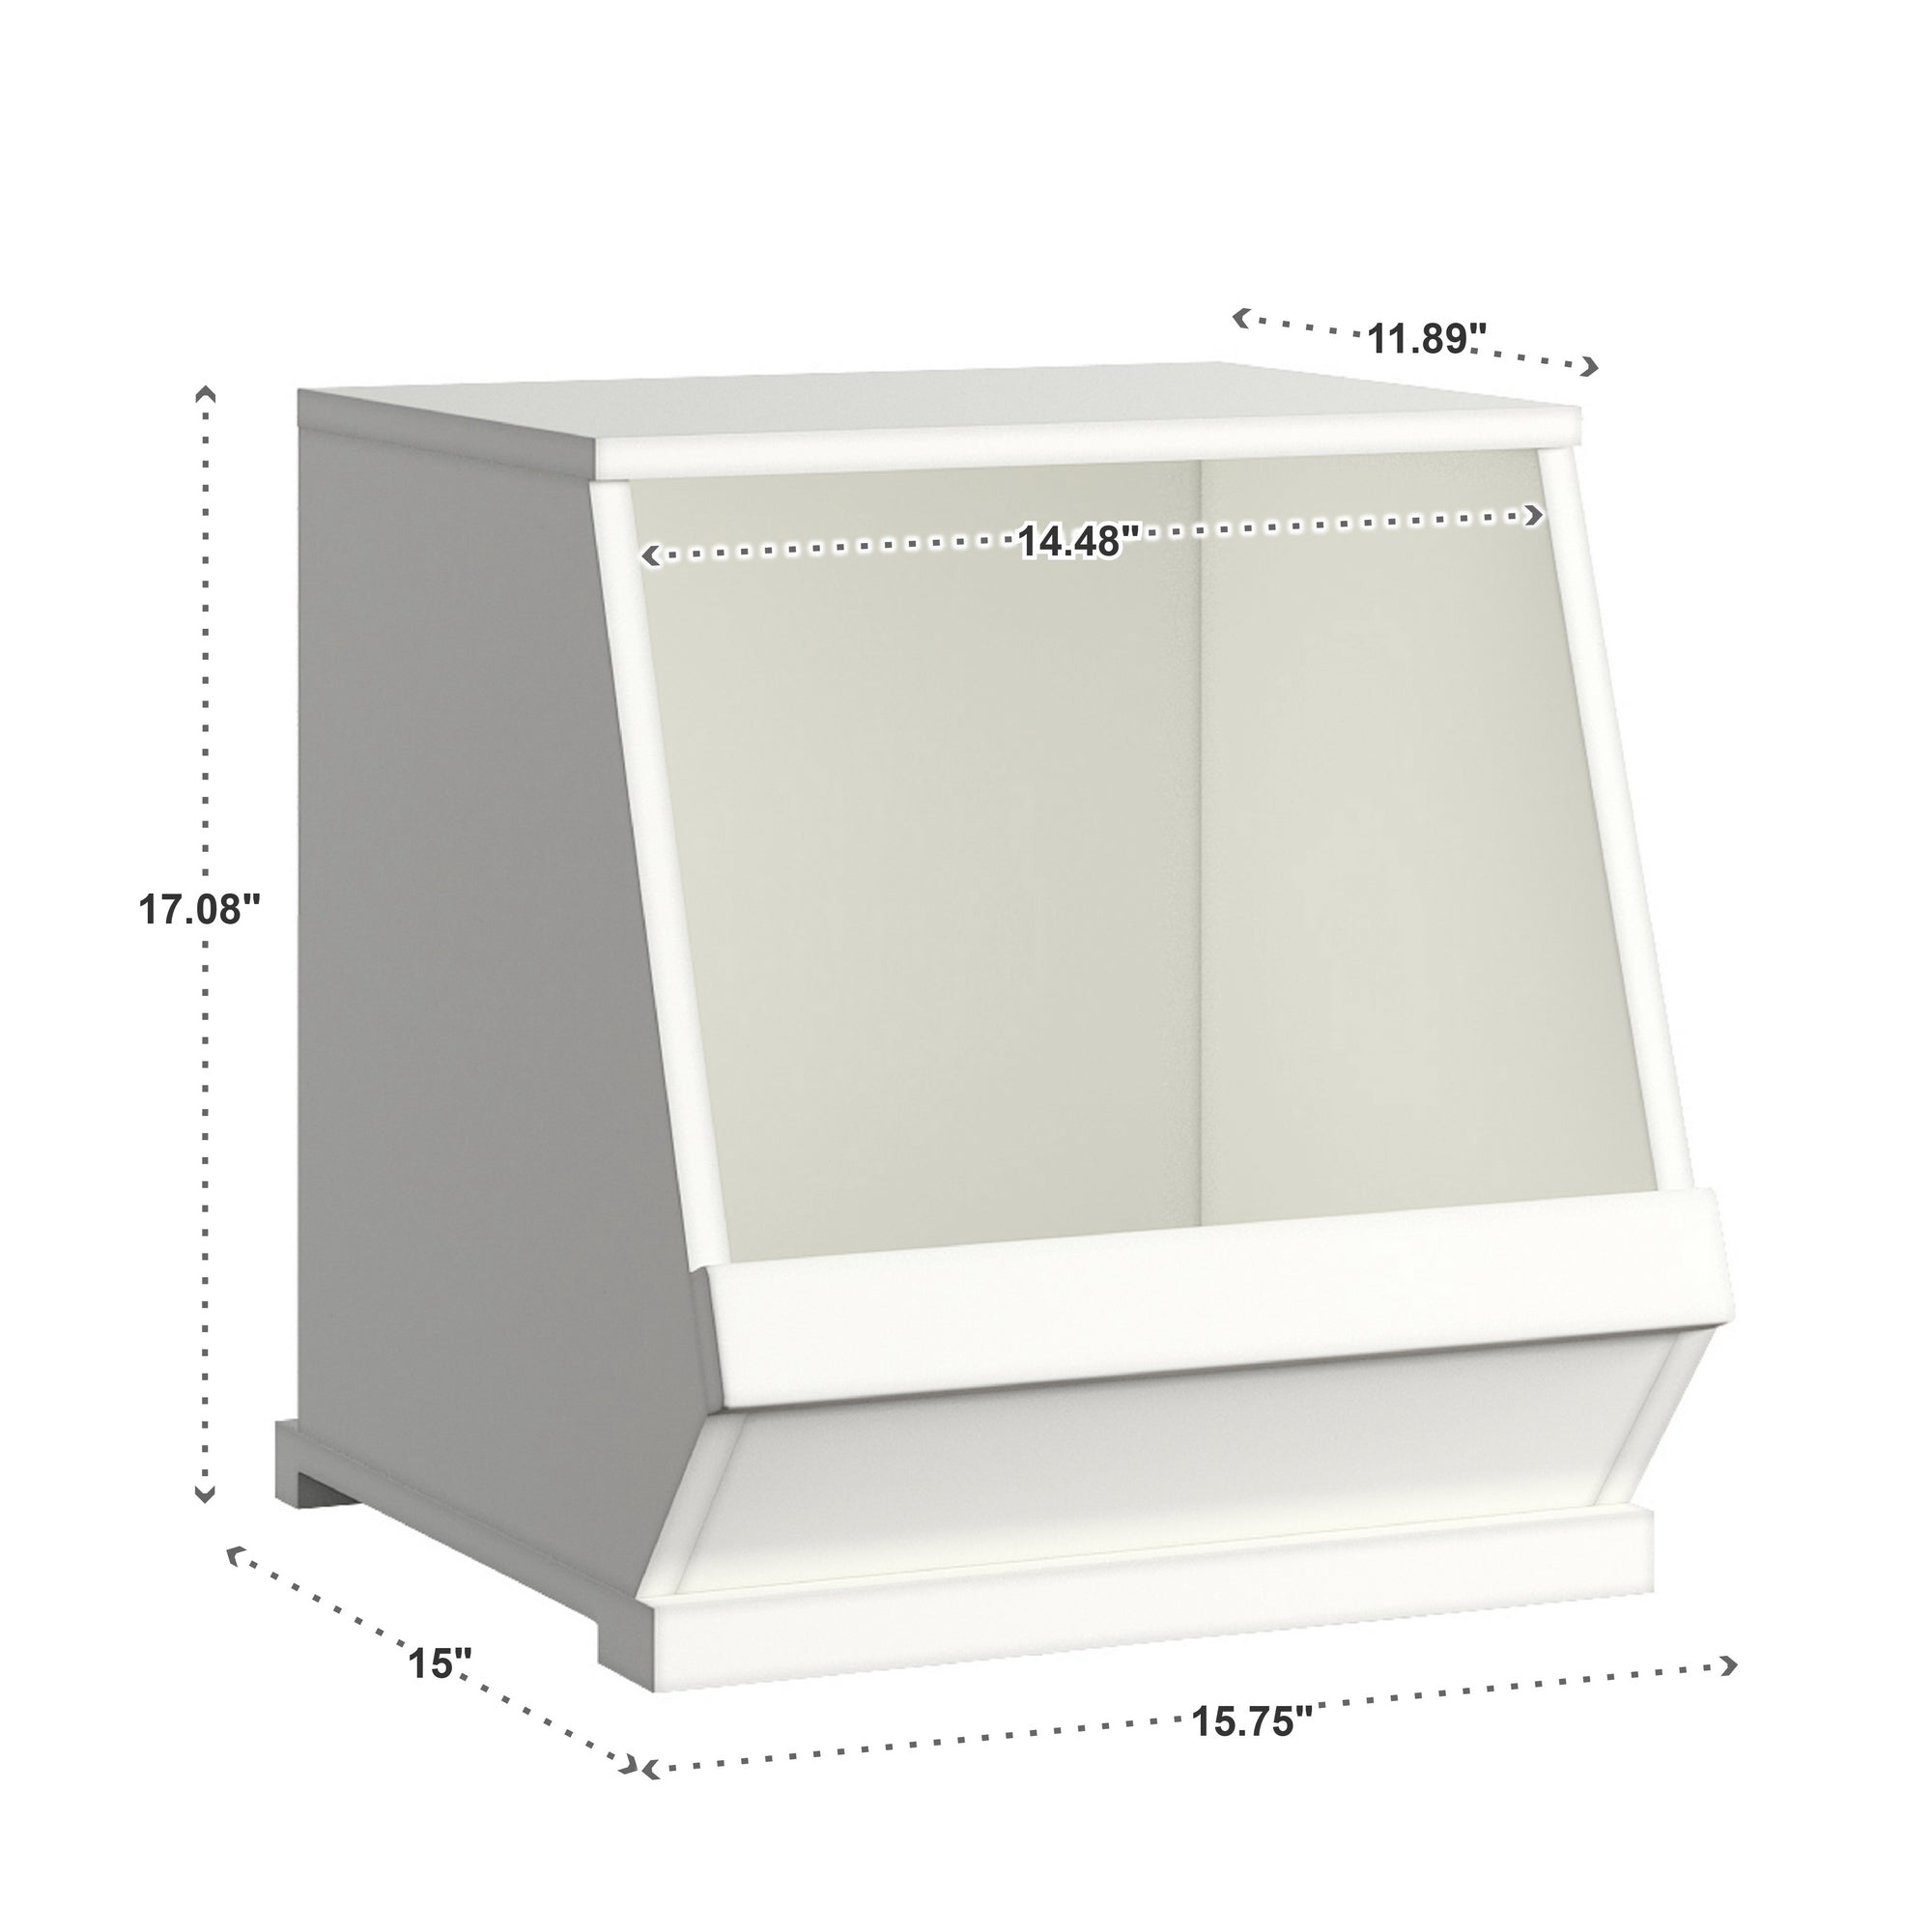 Modular Stacking Storage Bins - White, 1 Box